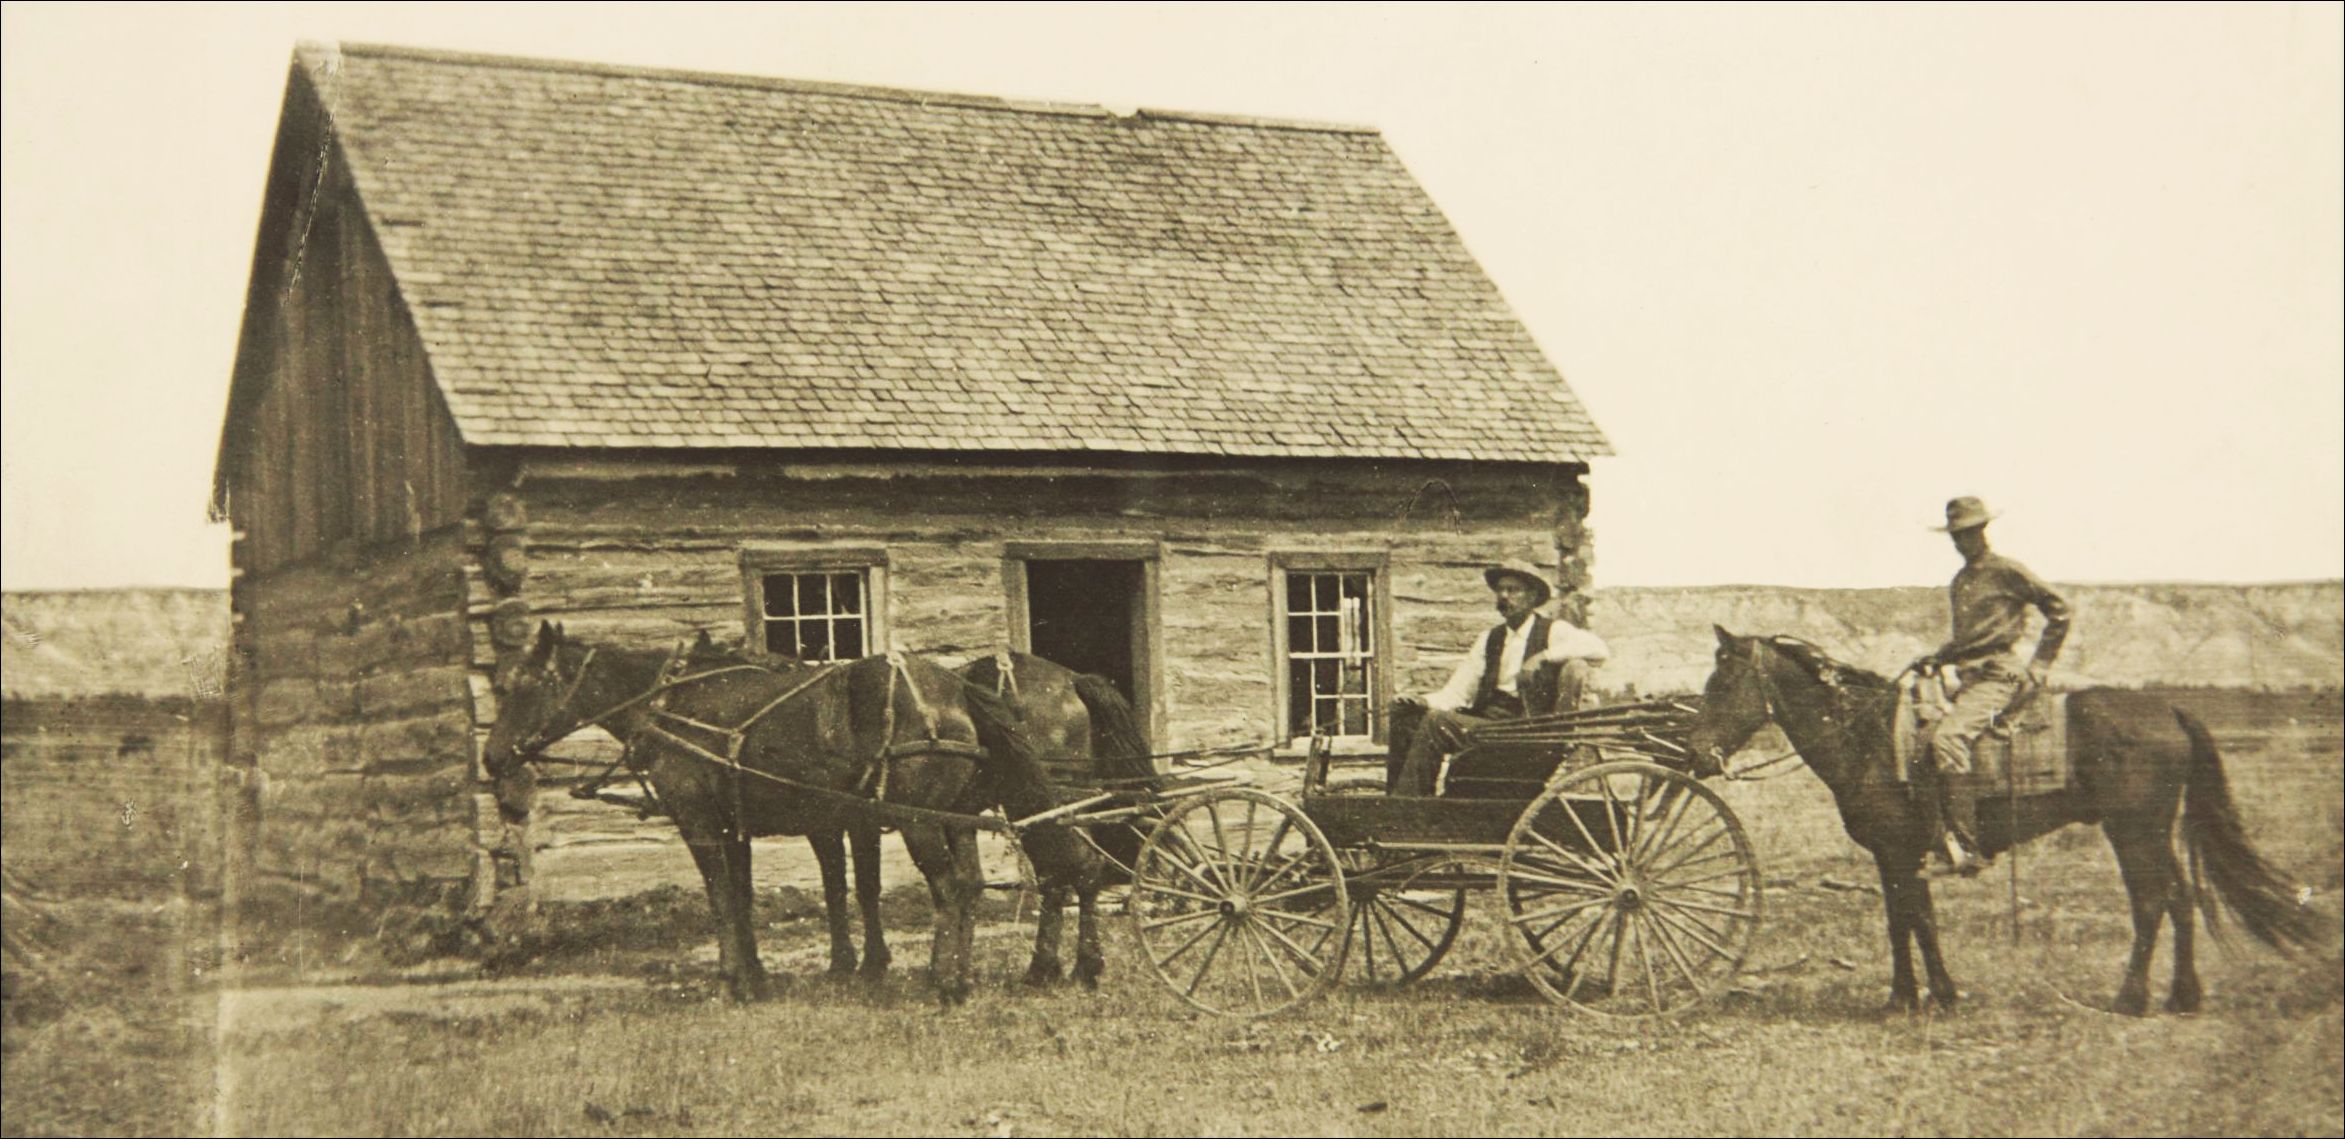 Roosevelt's first farm